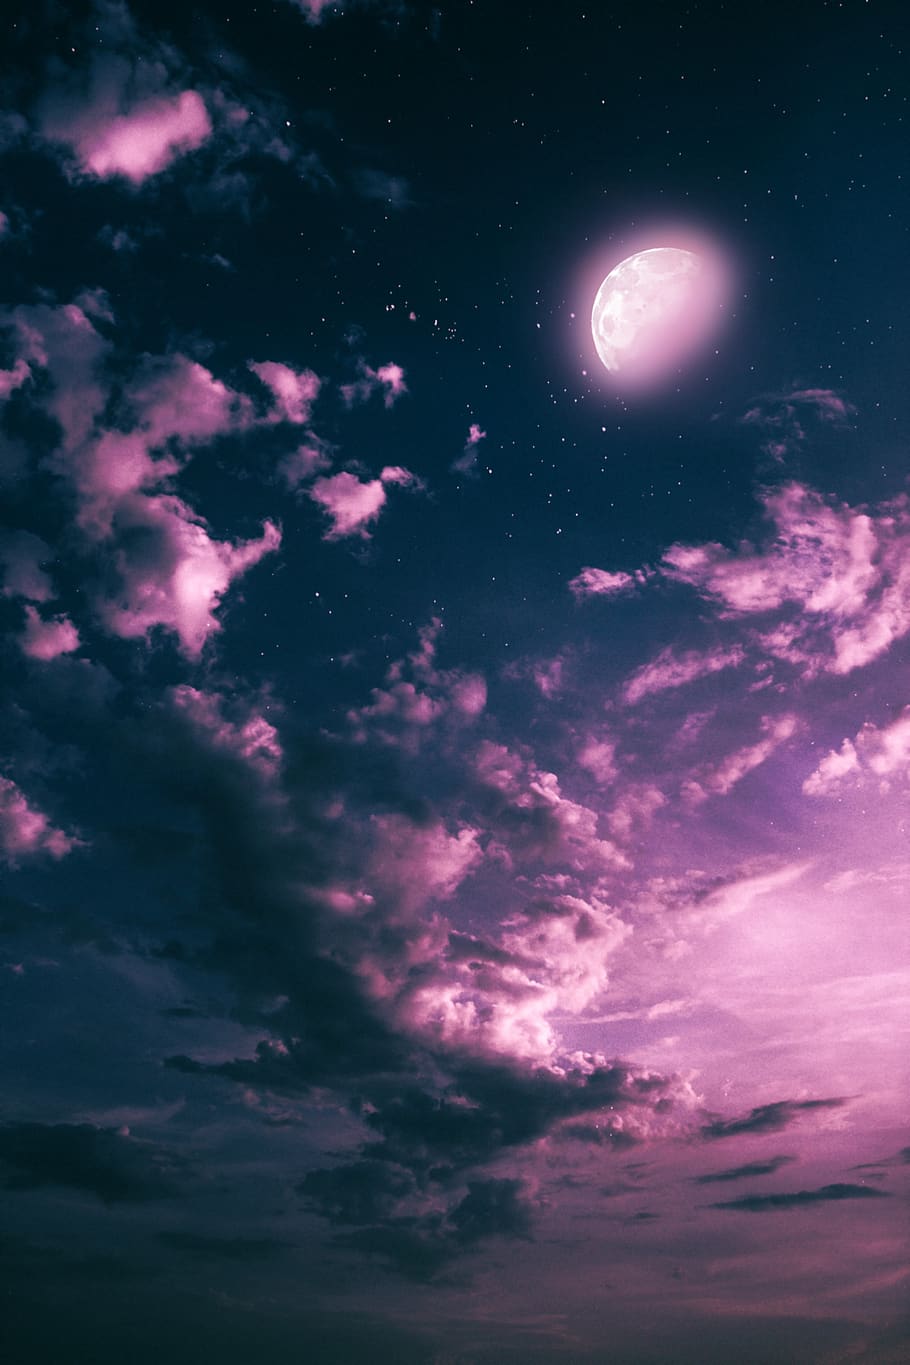 lua, noite, nuvens, céu, fantasia, rosa, nuvem - céu, espaço, astronomia, beleza natural